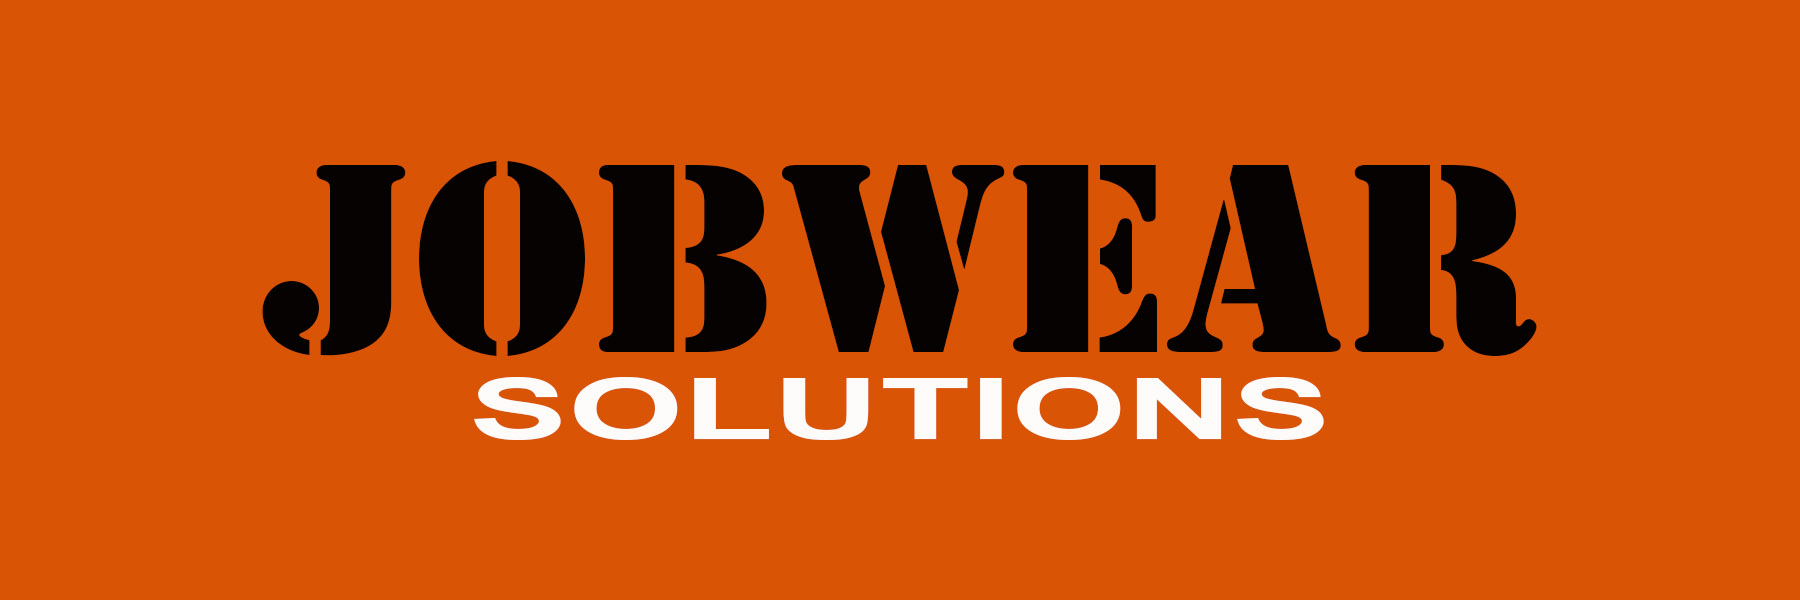 Jobwearsolutions logo